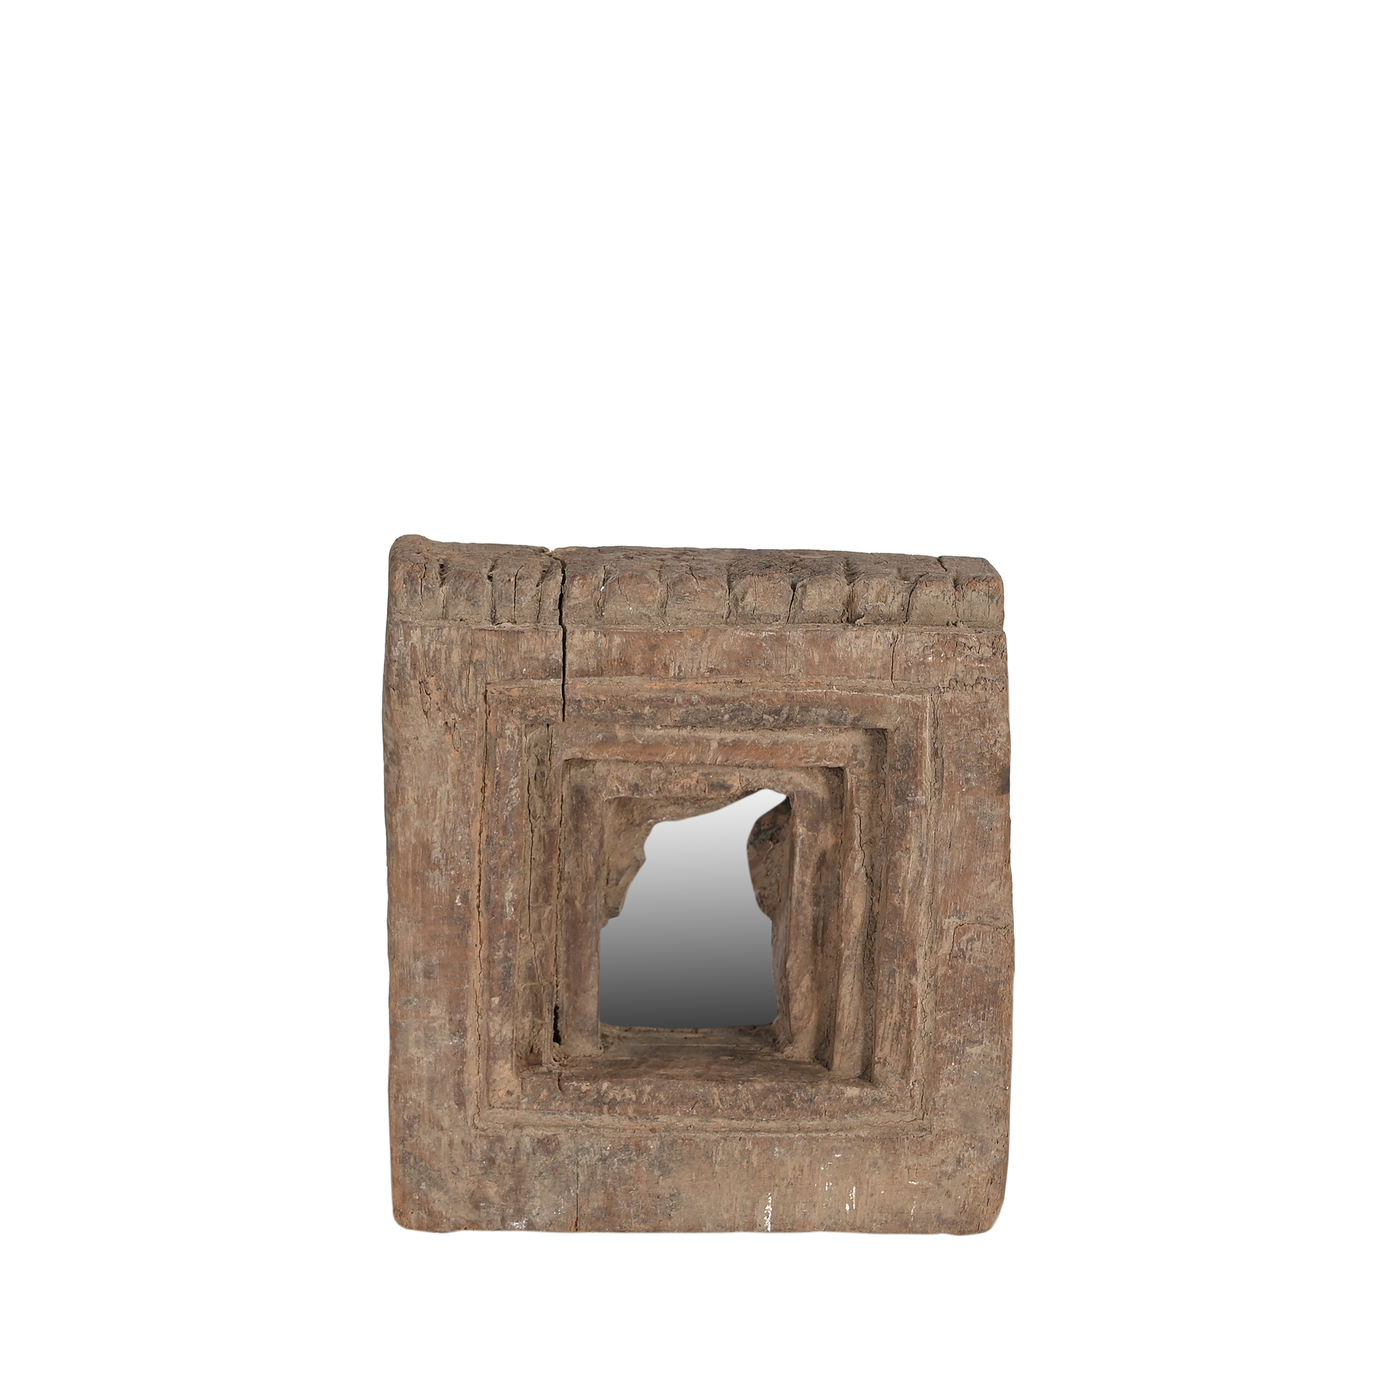 Mandir - Temple mirror n ° 32